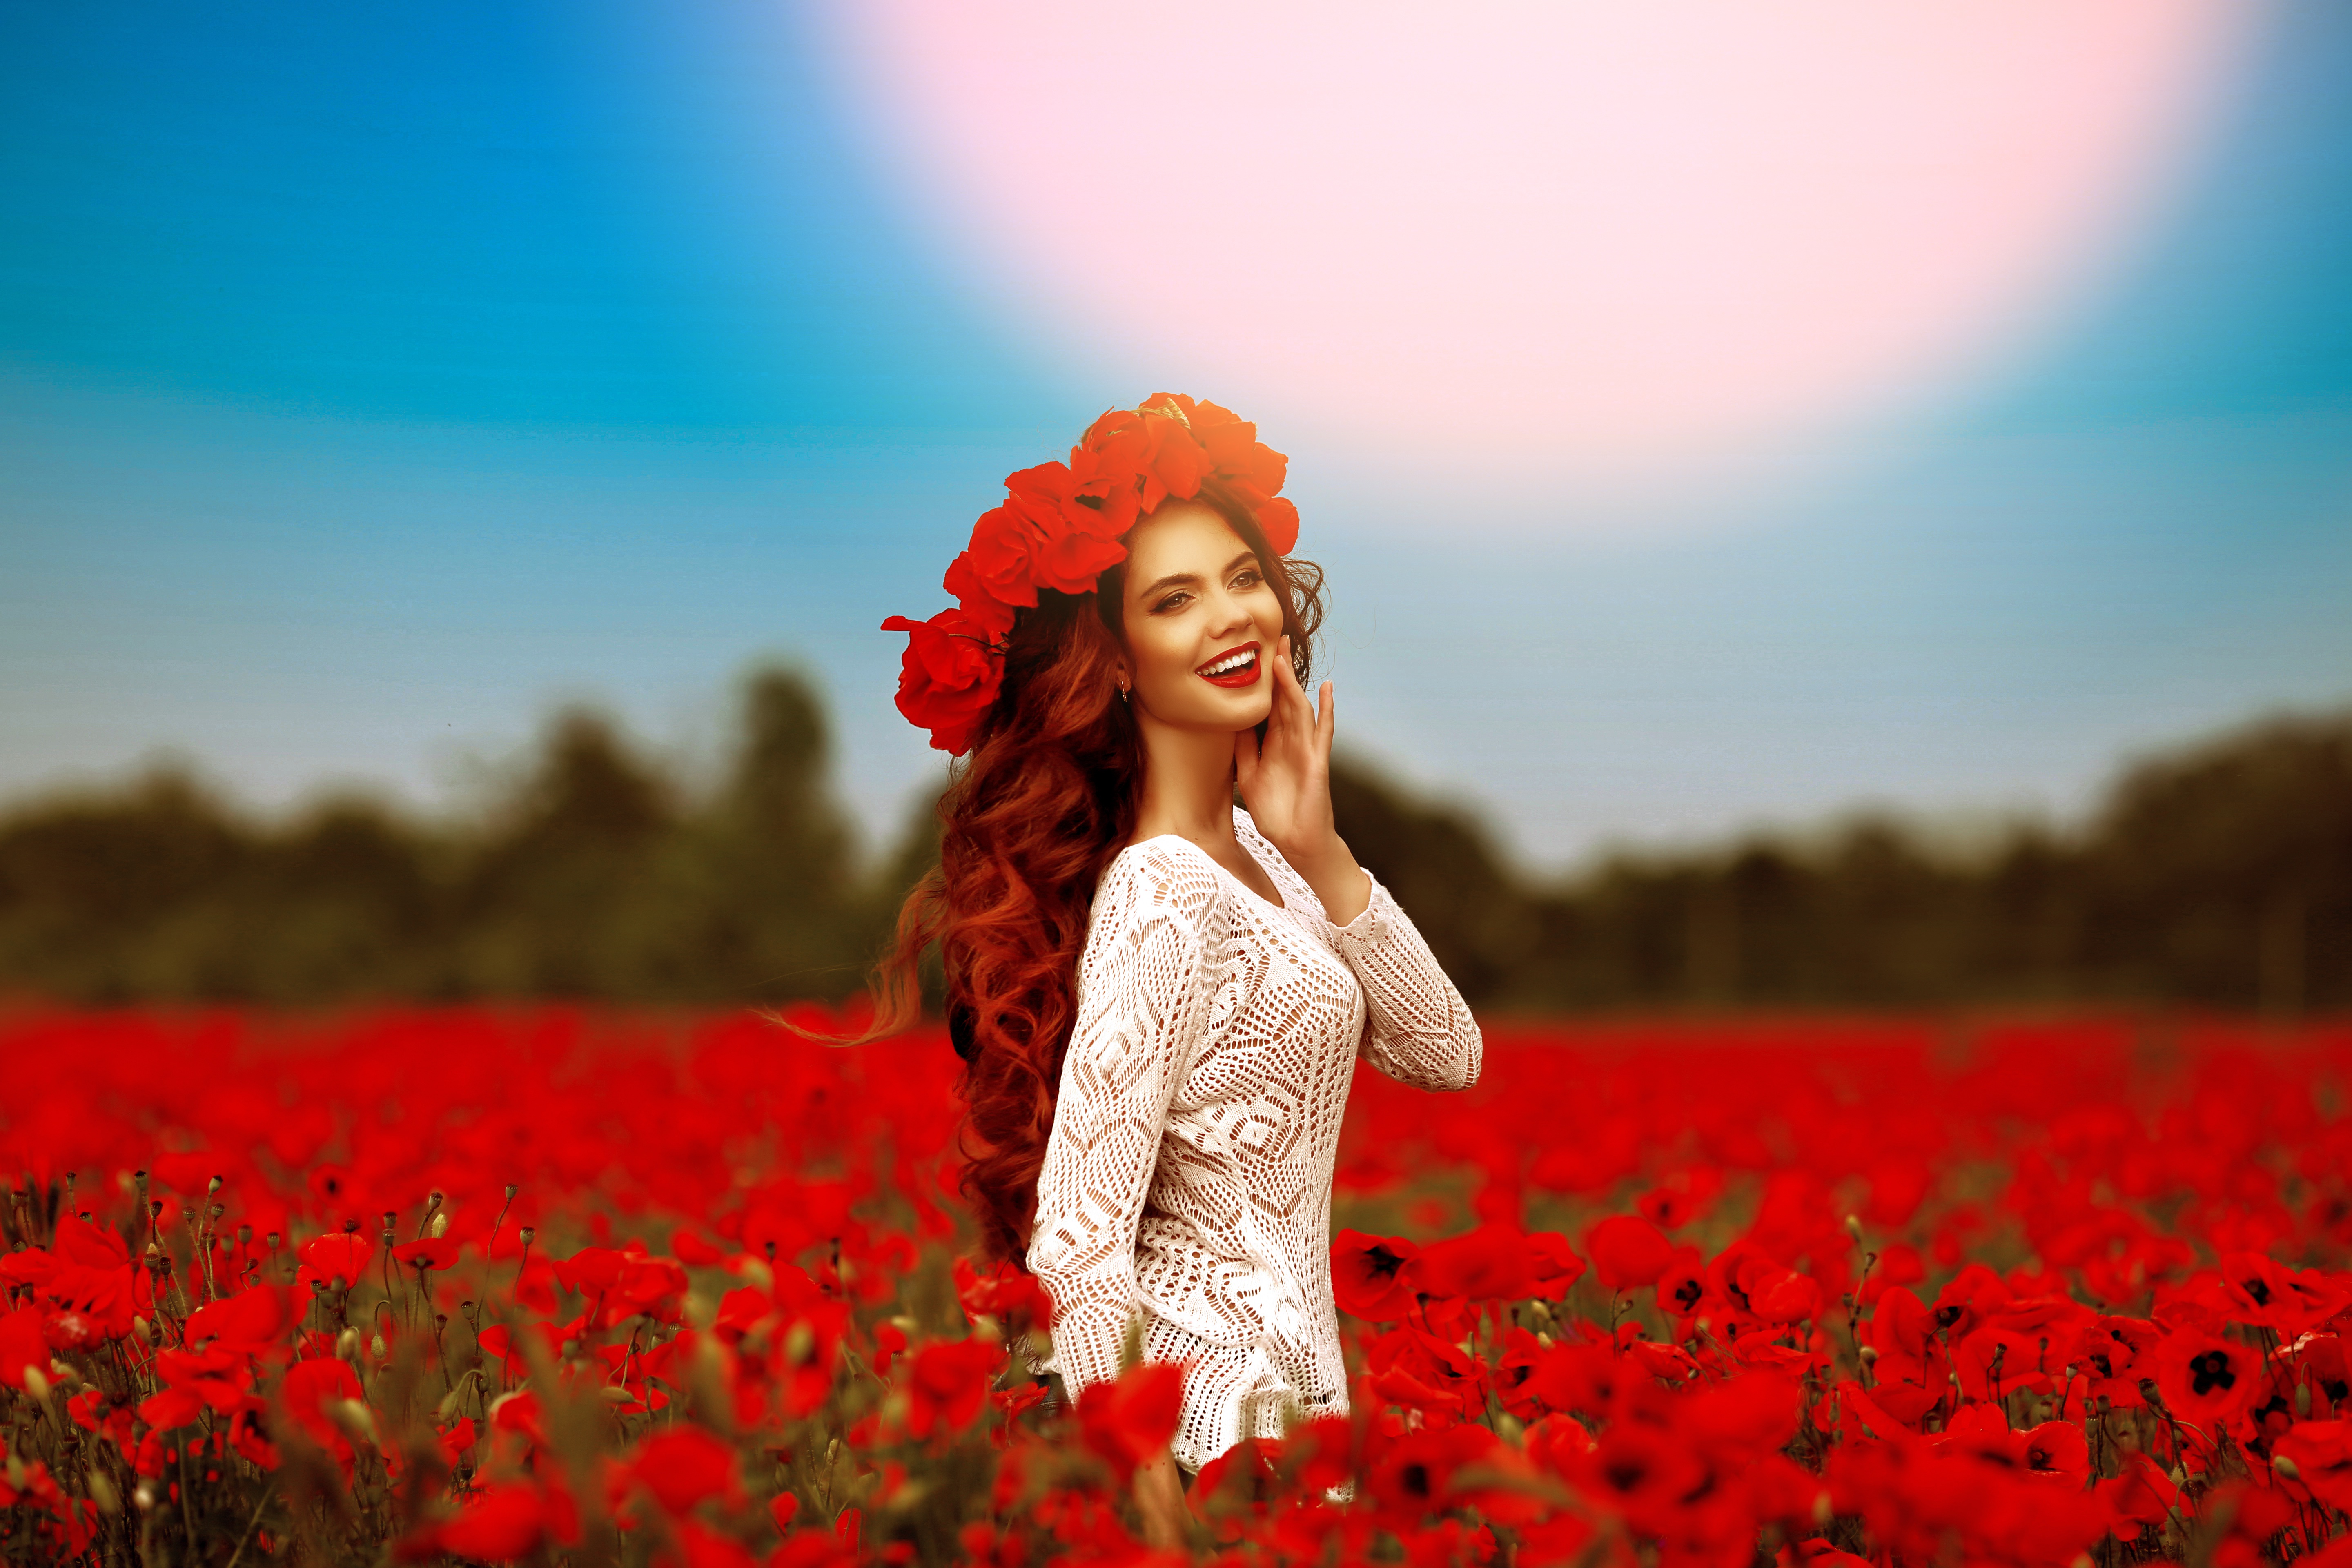 blur, women, model, field, lipstick, poppy, red flower, redhead, smile, wreath